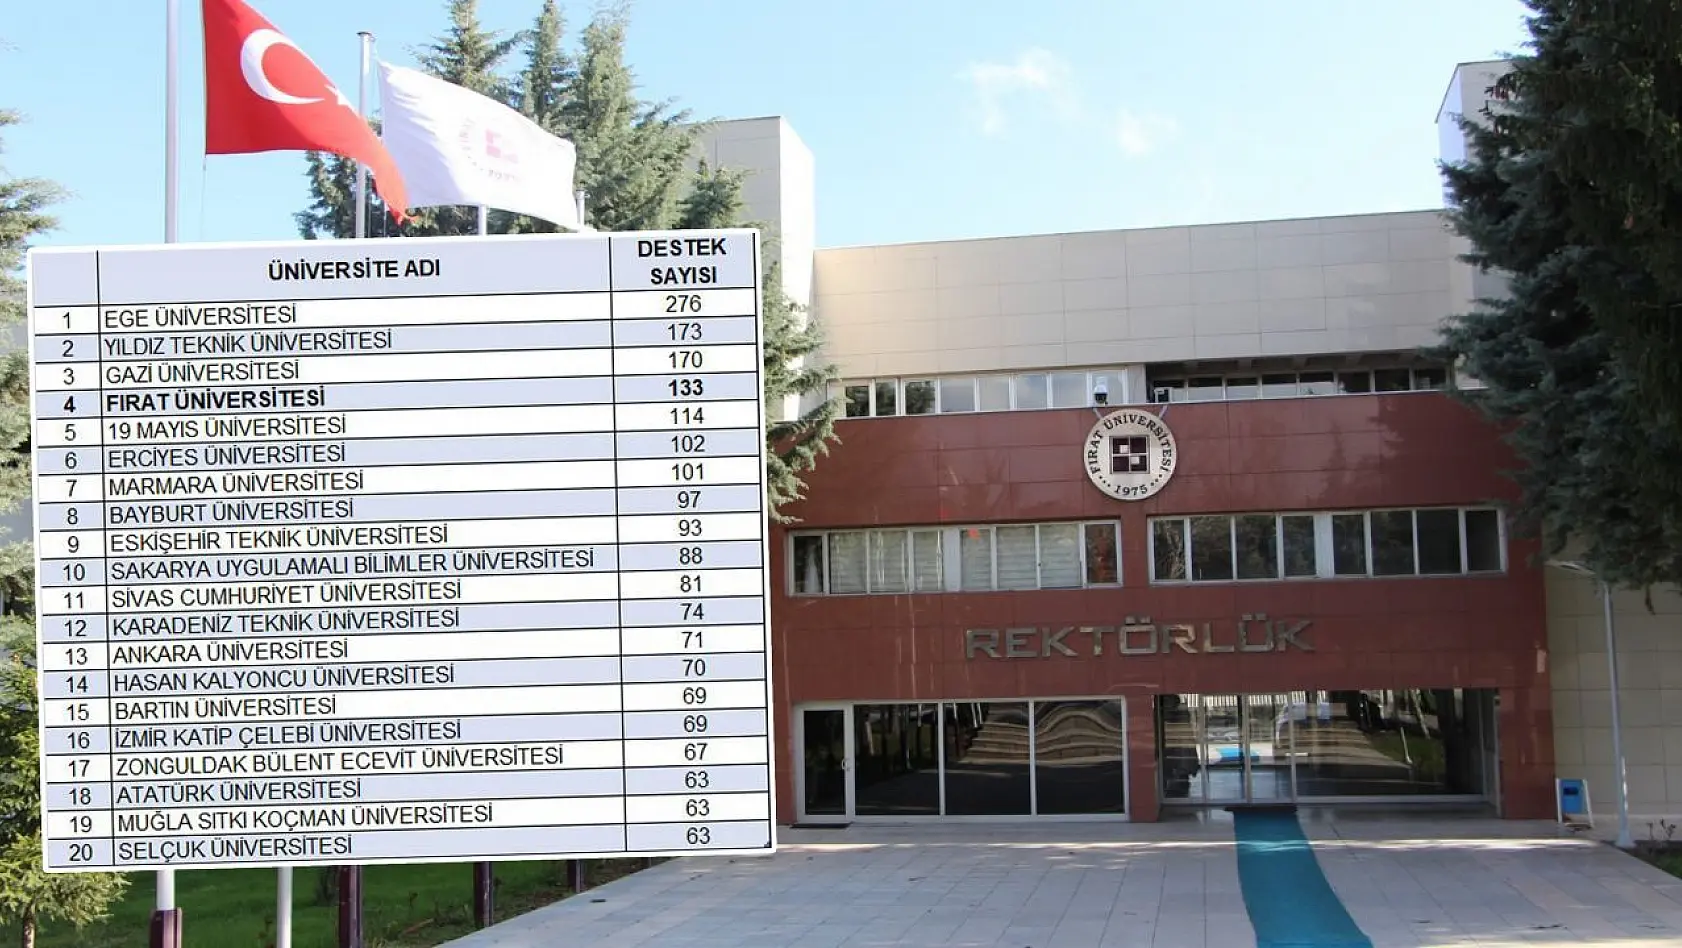 Fırat Üniversitesi 133 projeyle Türkiye'de 4. oldu